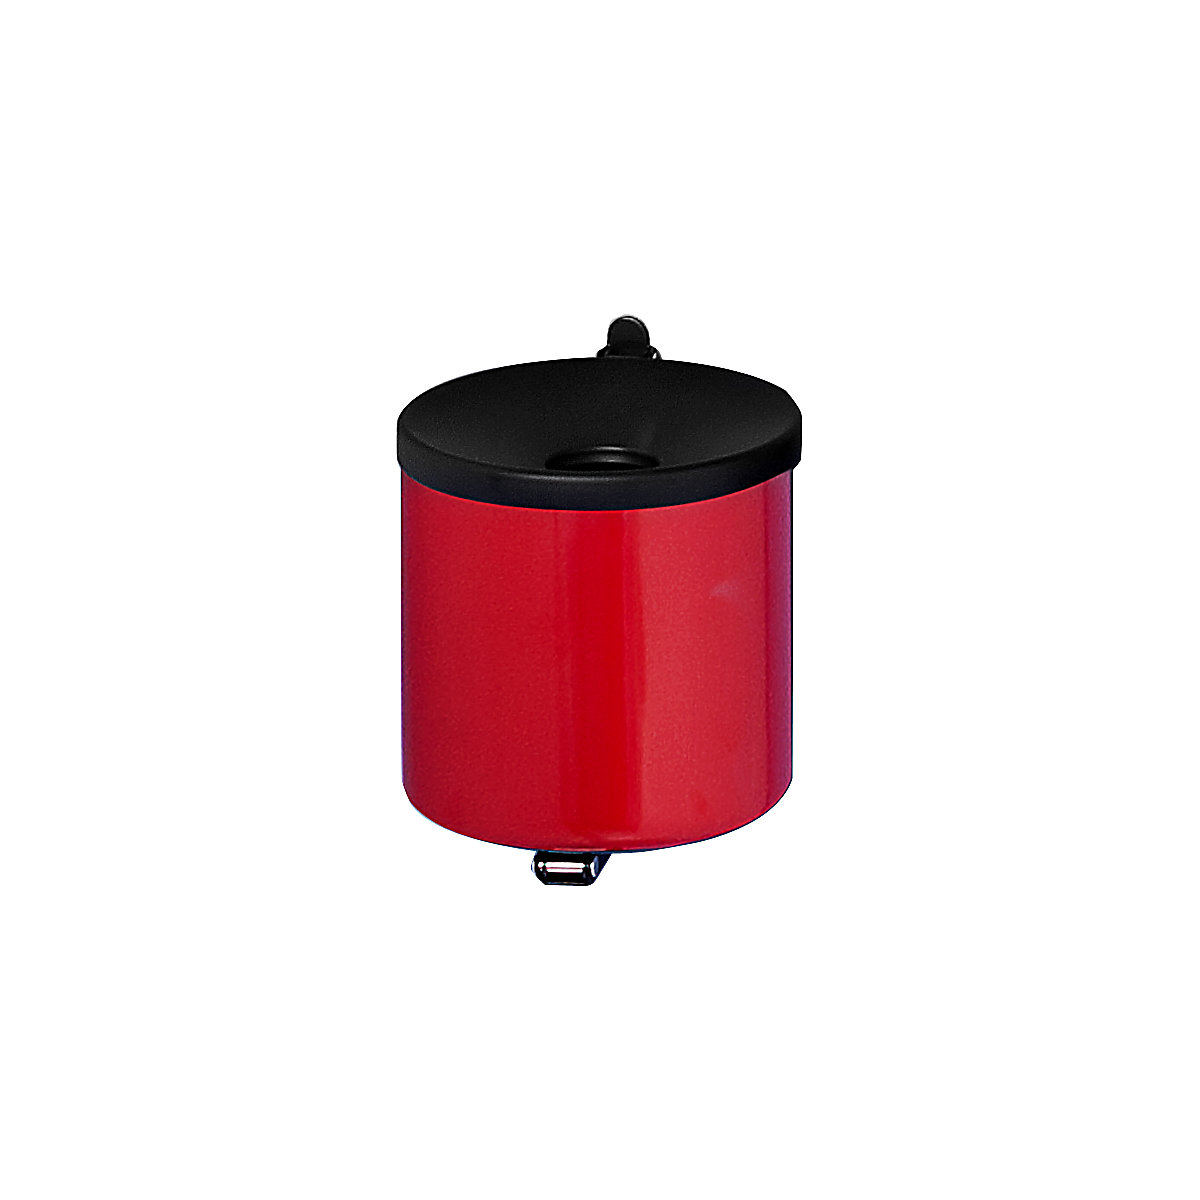 Bezpečnostní nástěnný popelník, výška 145 mm, Ø 150 mm, ocelový plech, červená-1